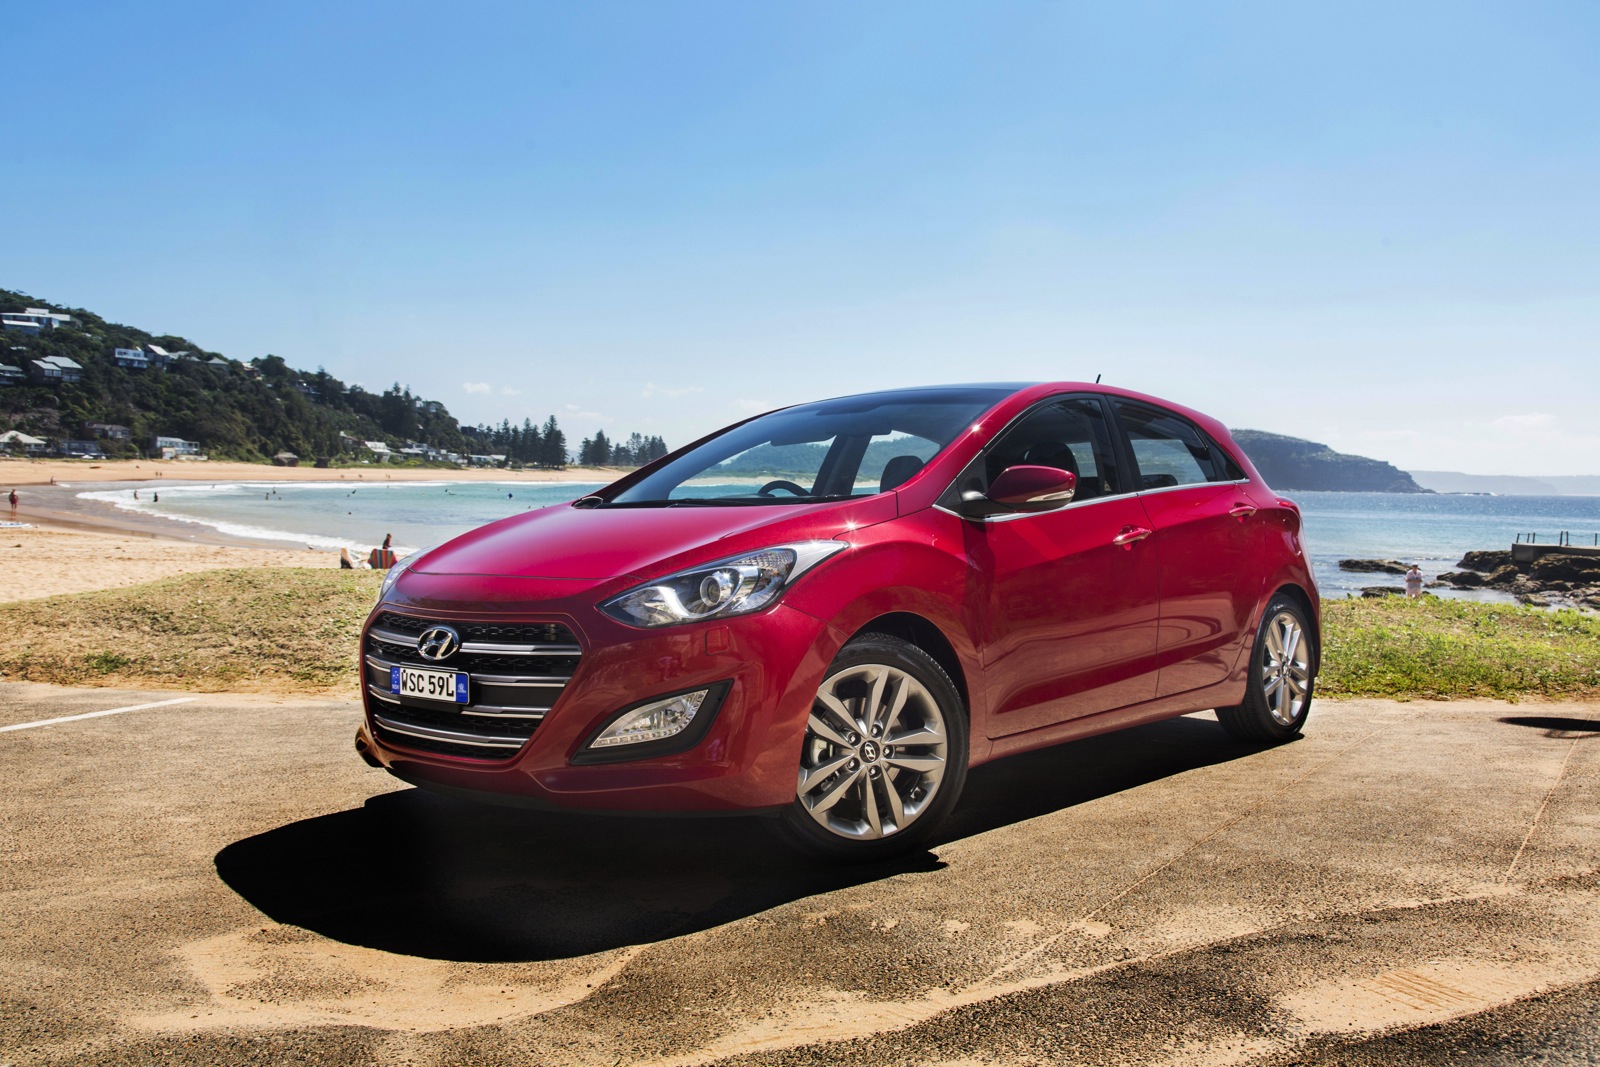 2015 Hyundai i30 Series II Review photos CarAdvice